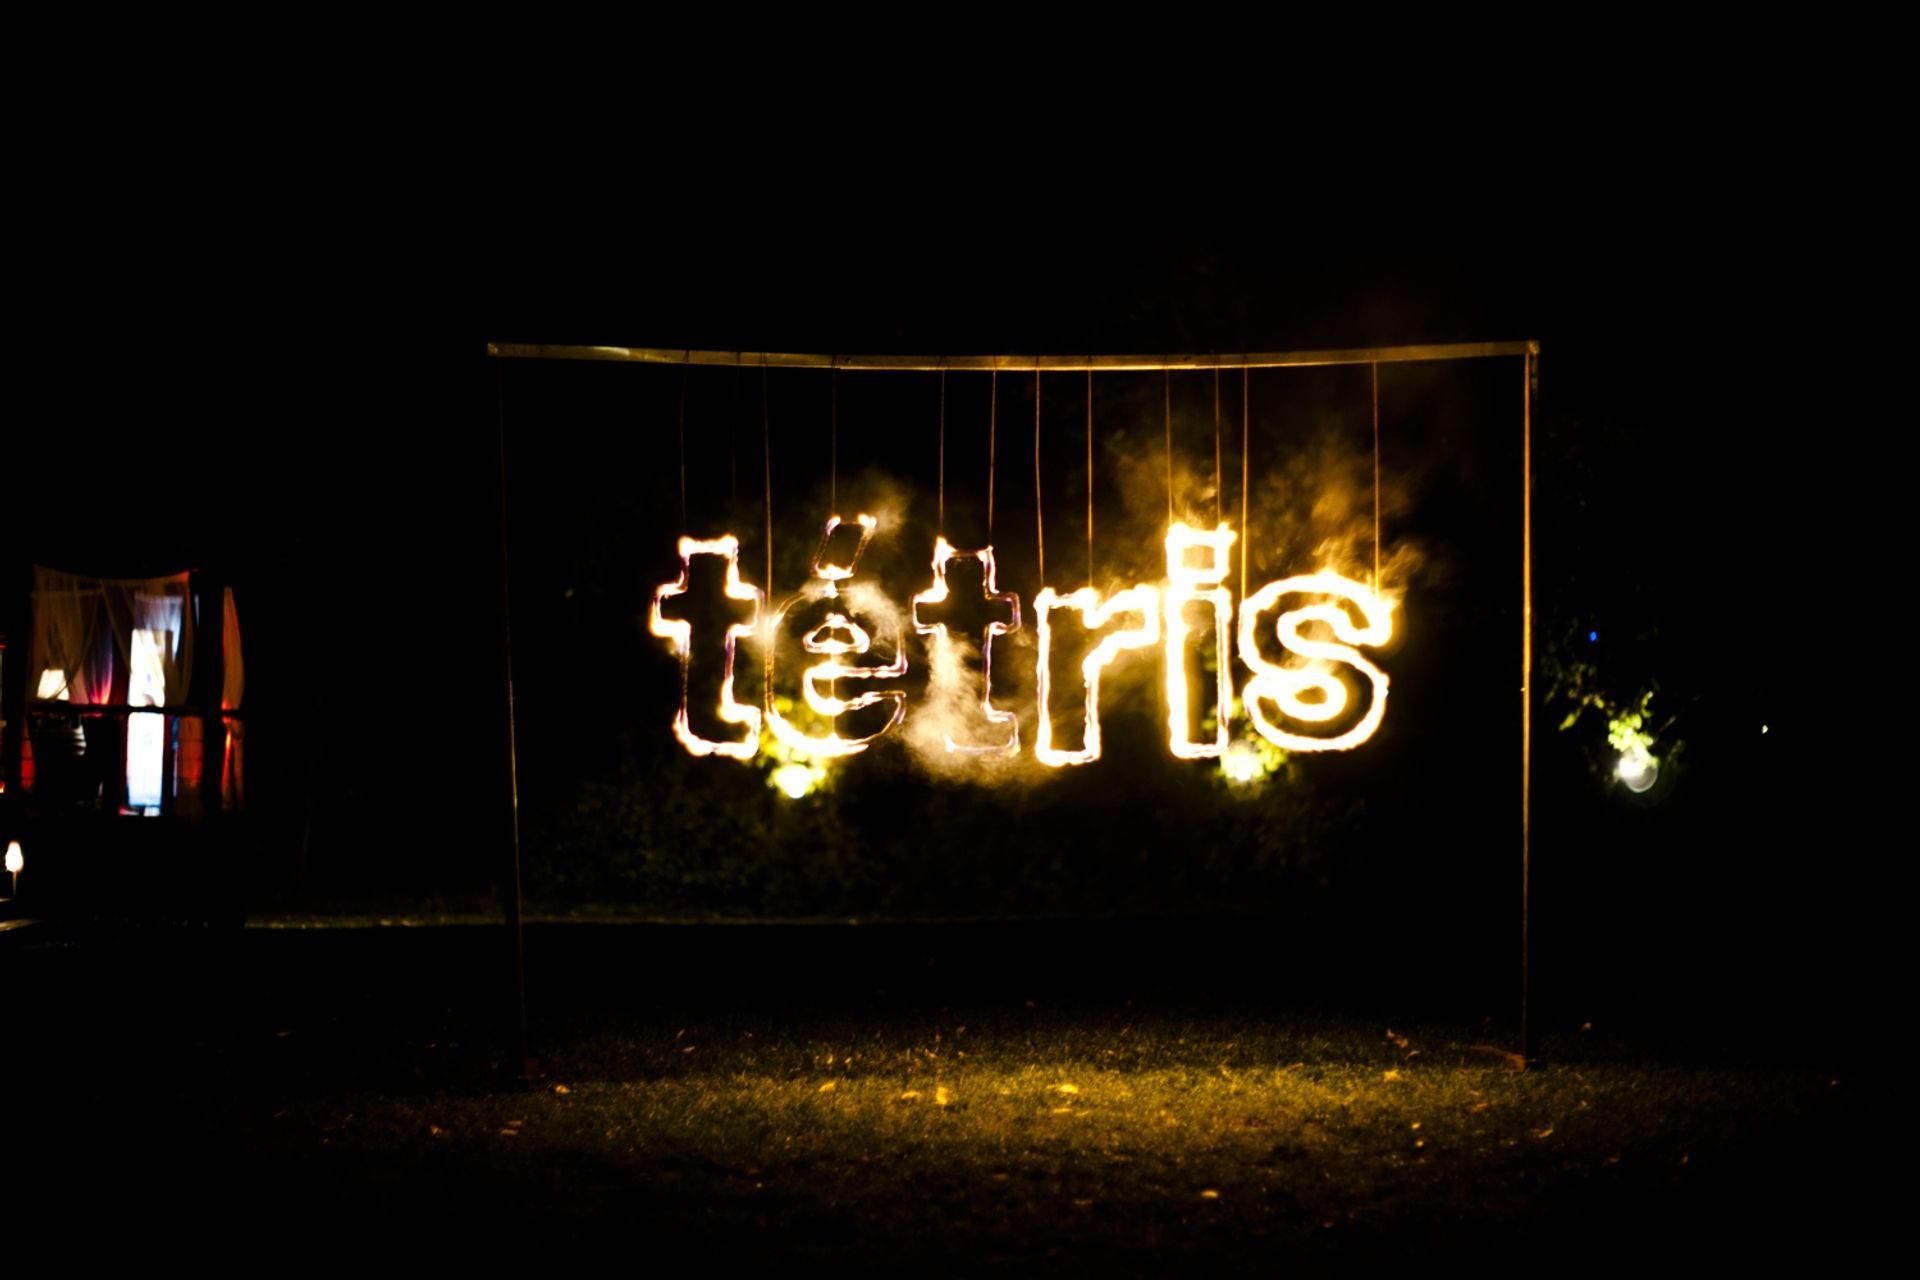  Tétris rozwija skrzydła. Rebranding zakończony.